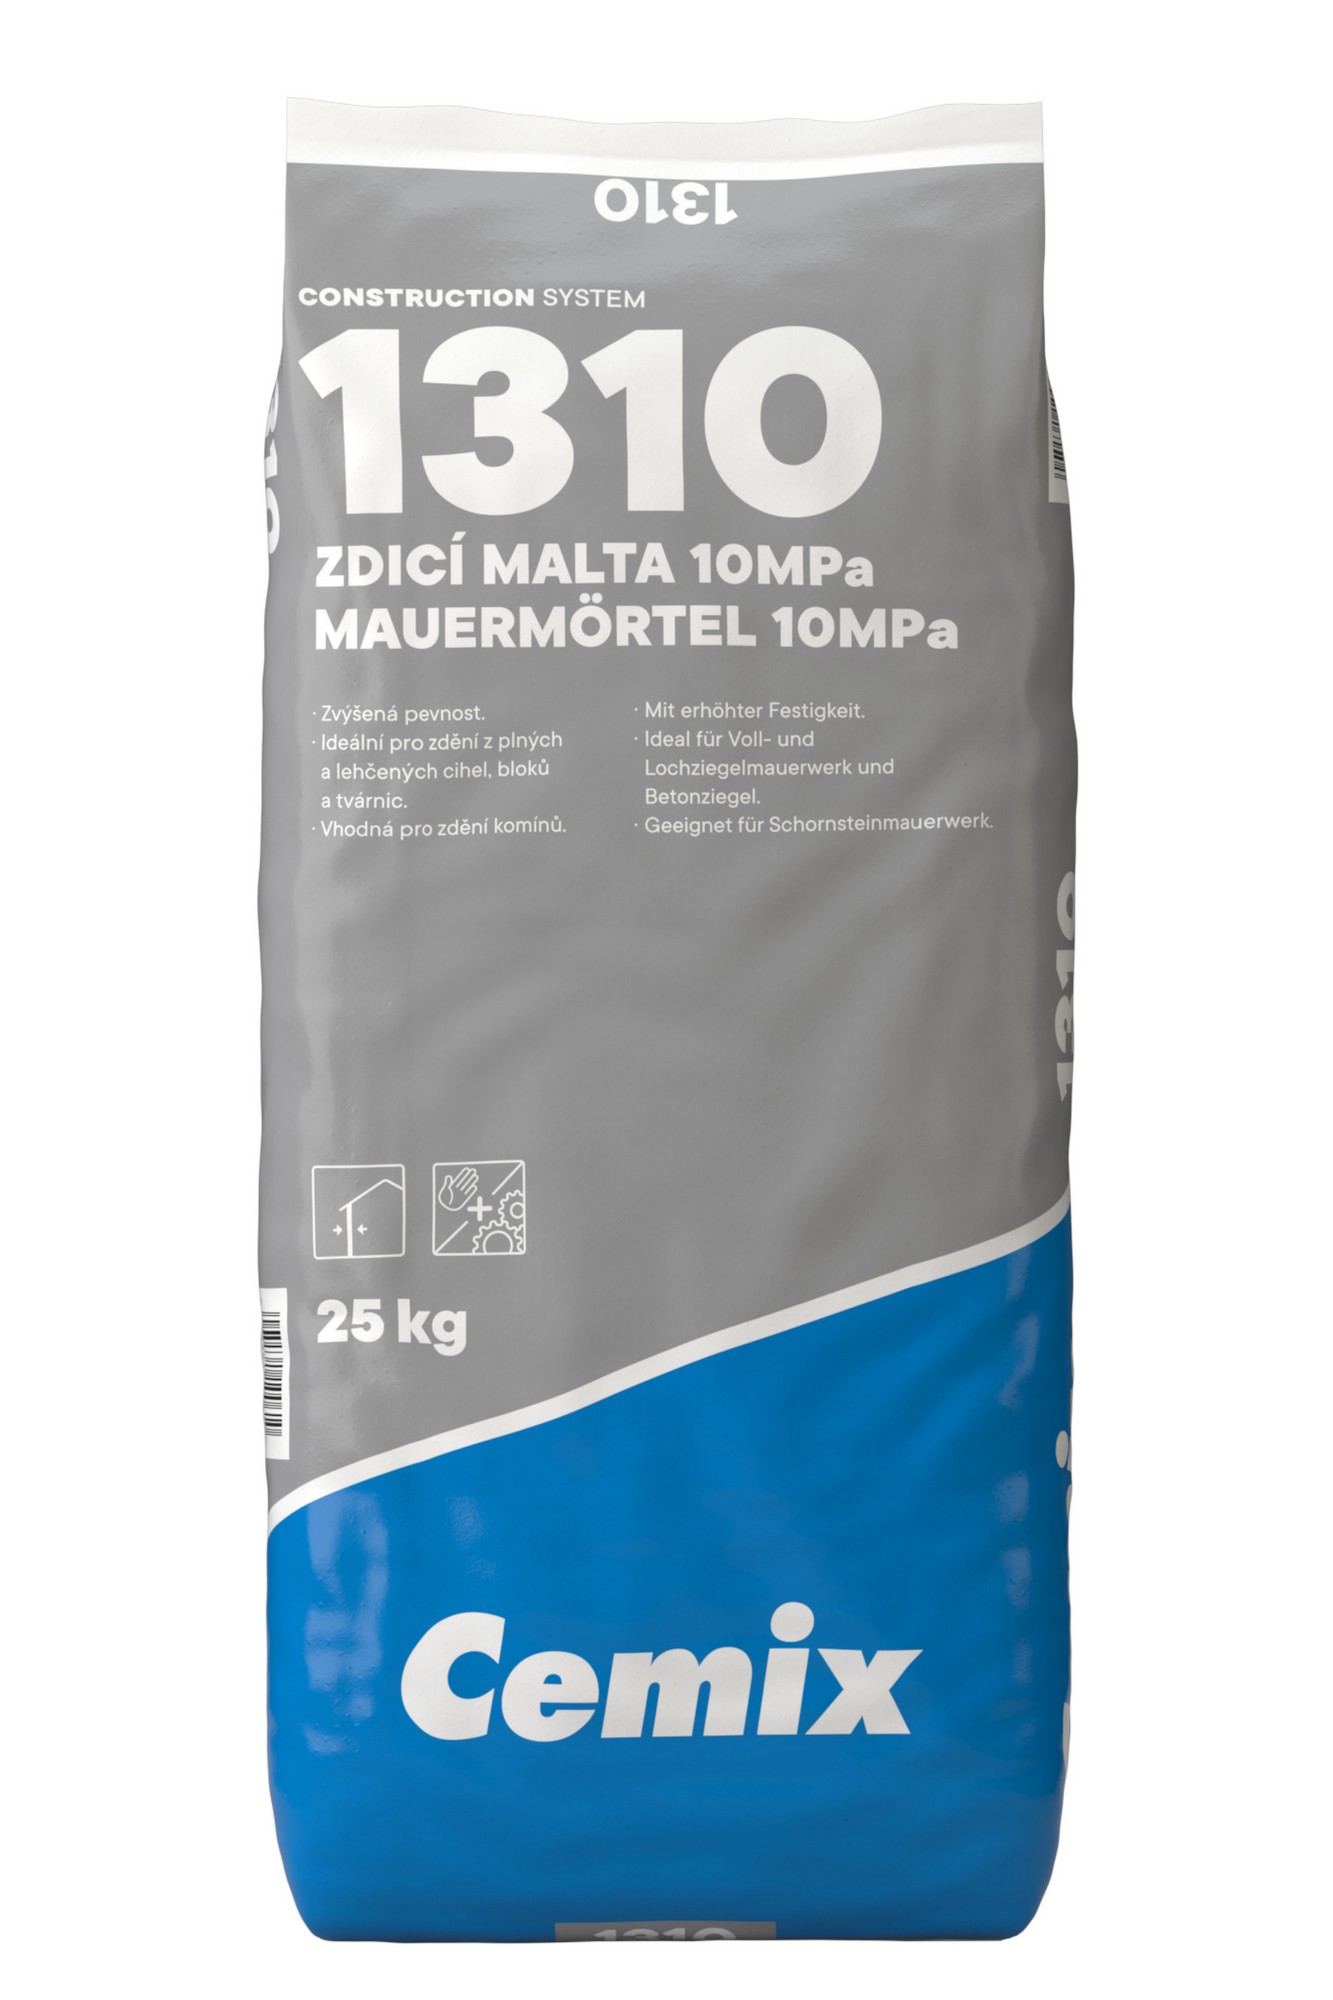 Malta zdicí Cemix 1310 25 kg